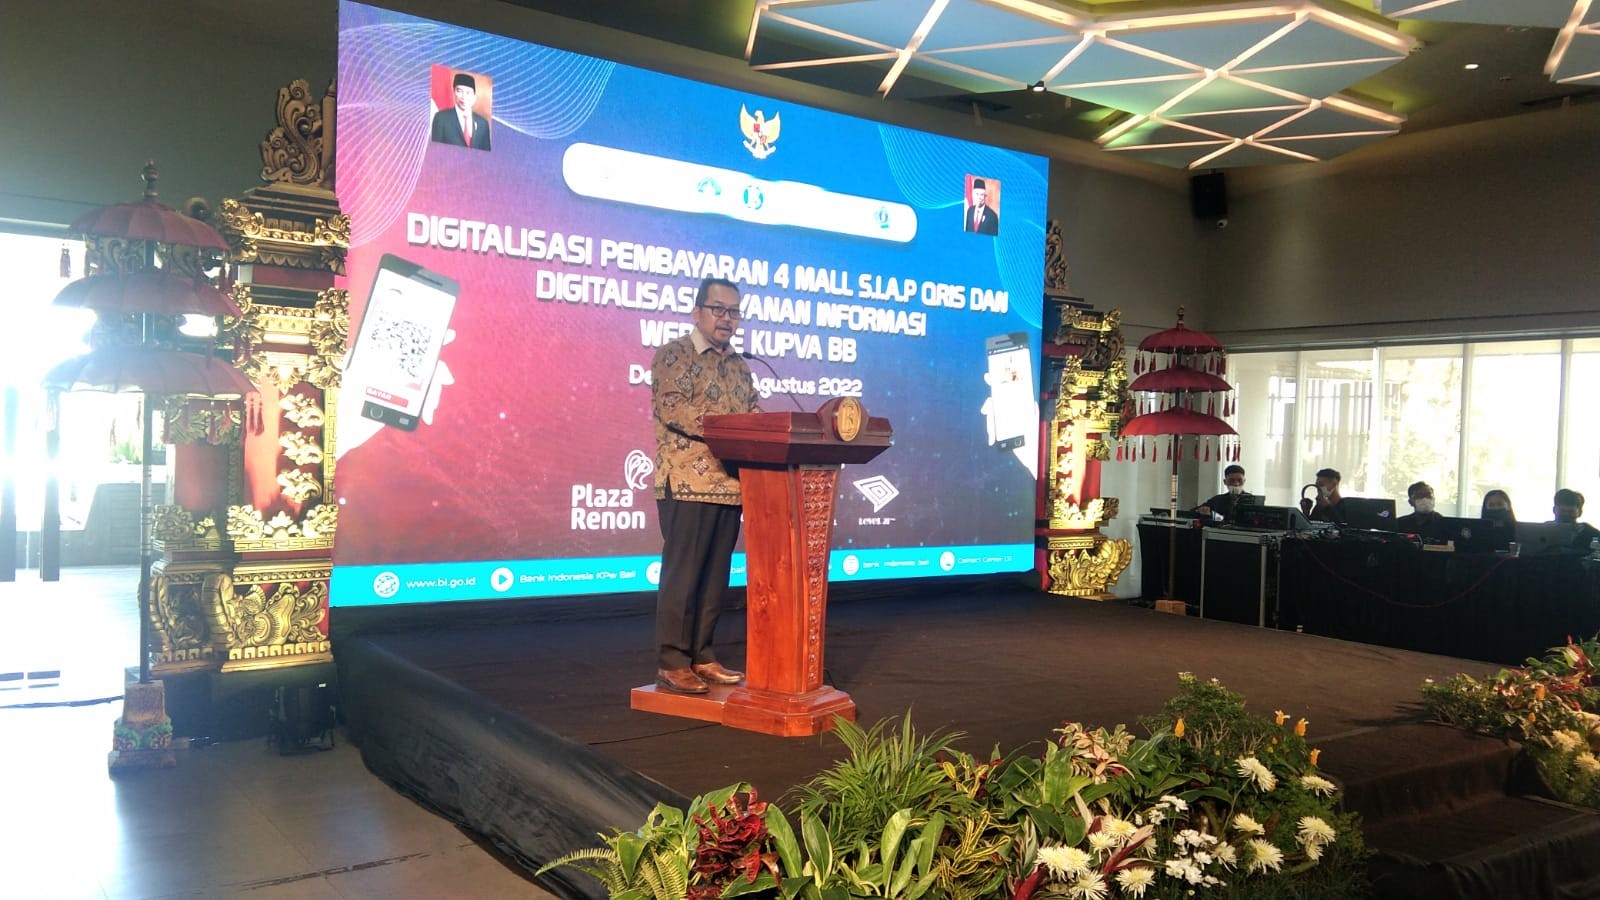 Digitalisasi SIAP QRIS Pembayaran Empat Mall di Denpasar